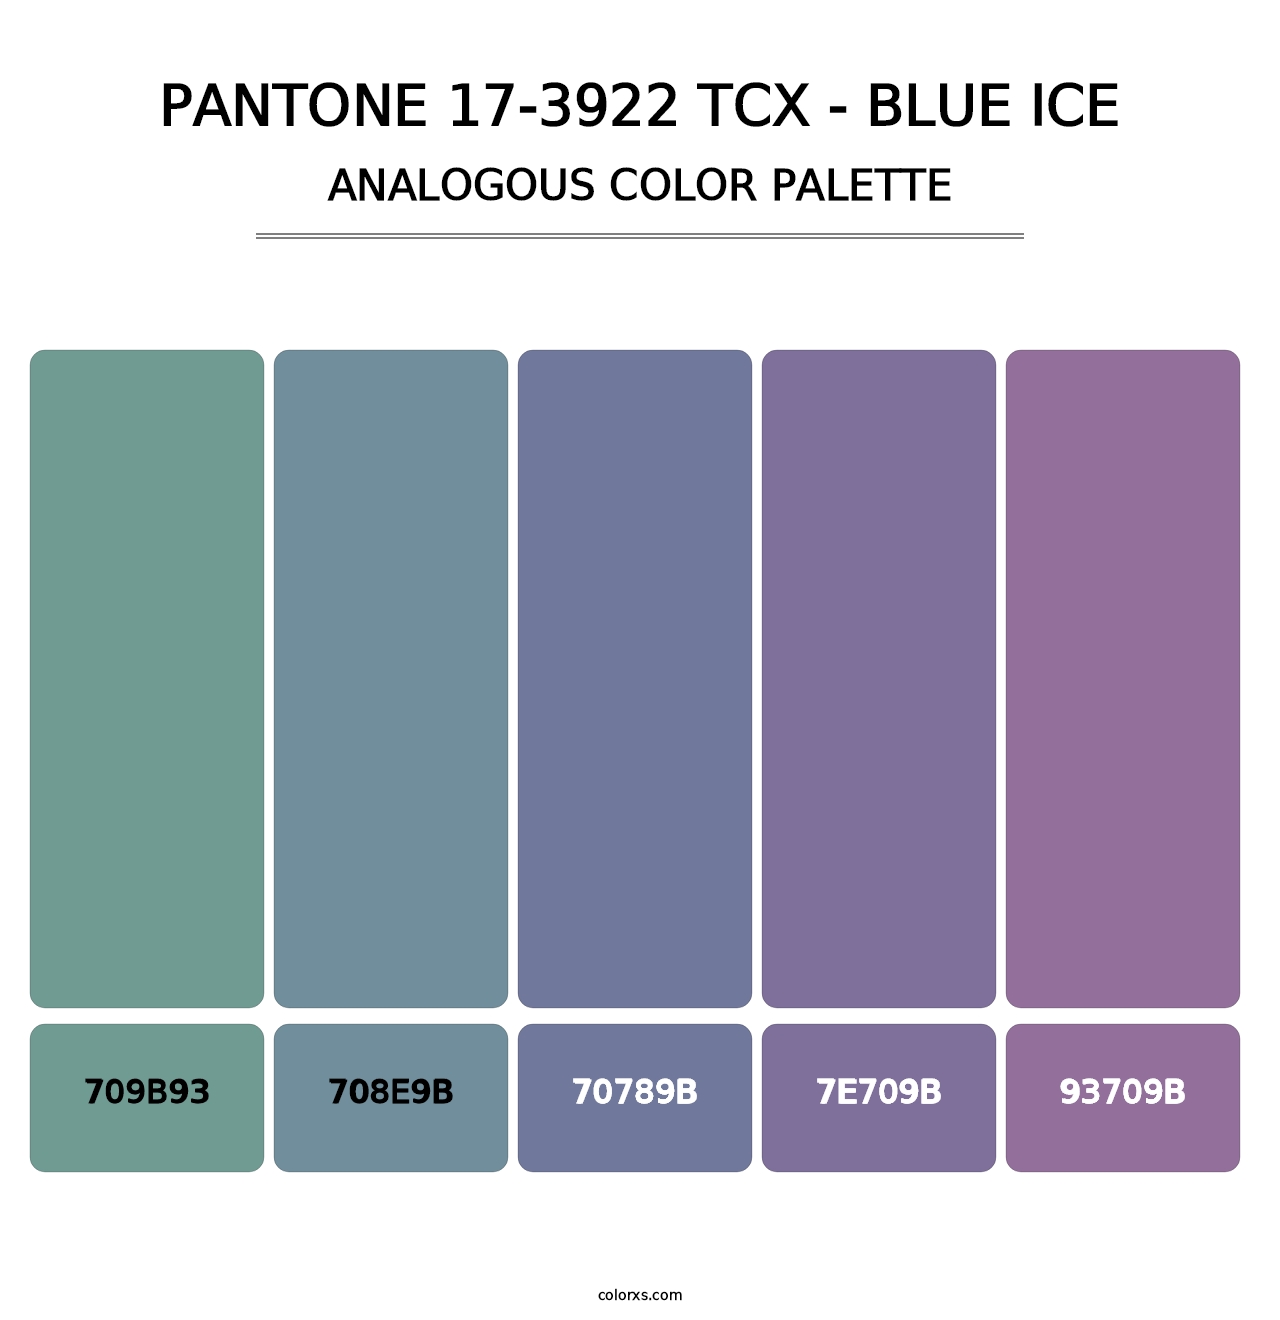 PANTONE 17-3922 TCX - Blue Ice - Analogous Color Palette